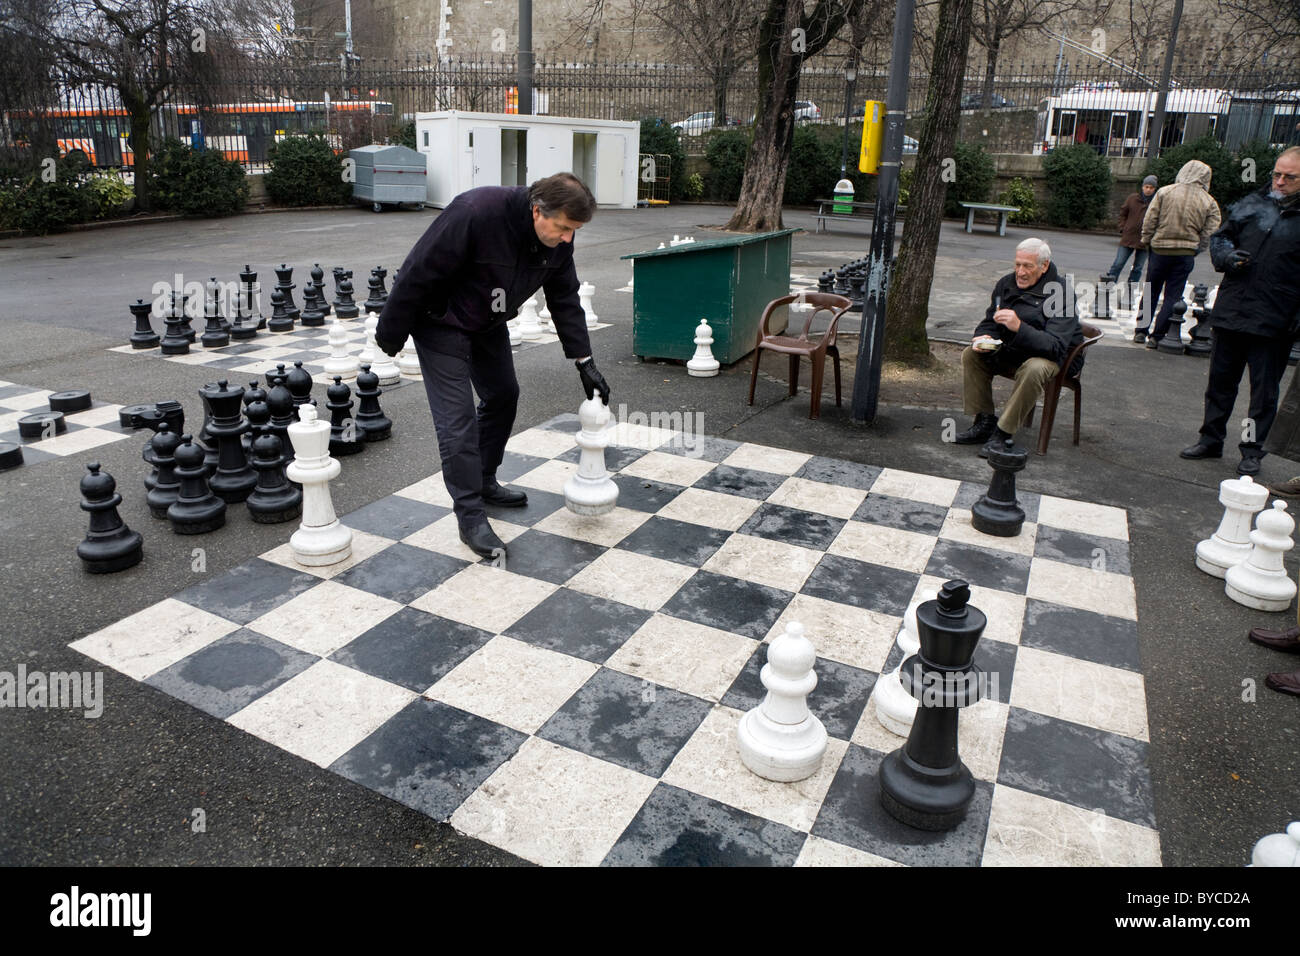 Le persone che giocano una partita di grandi / grande / giant / scacchi grandi in un parco pubblico a Ginevra / Geneve, Svizzera. Foto Stock